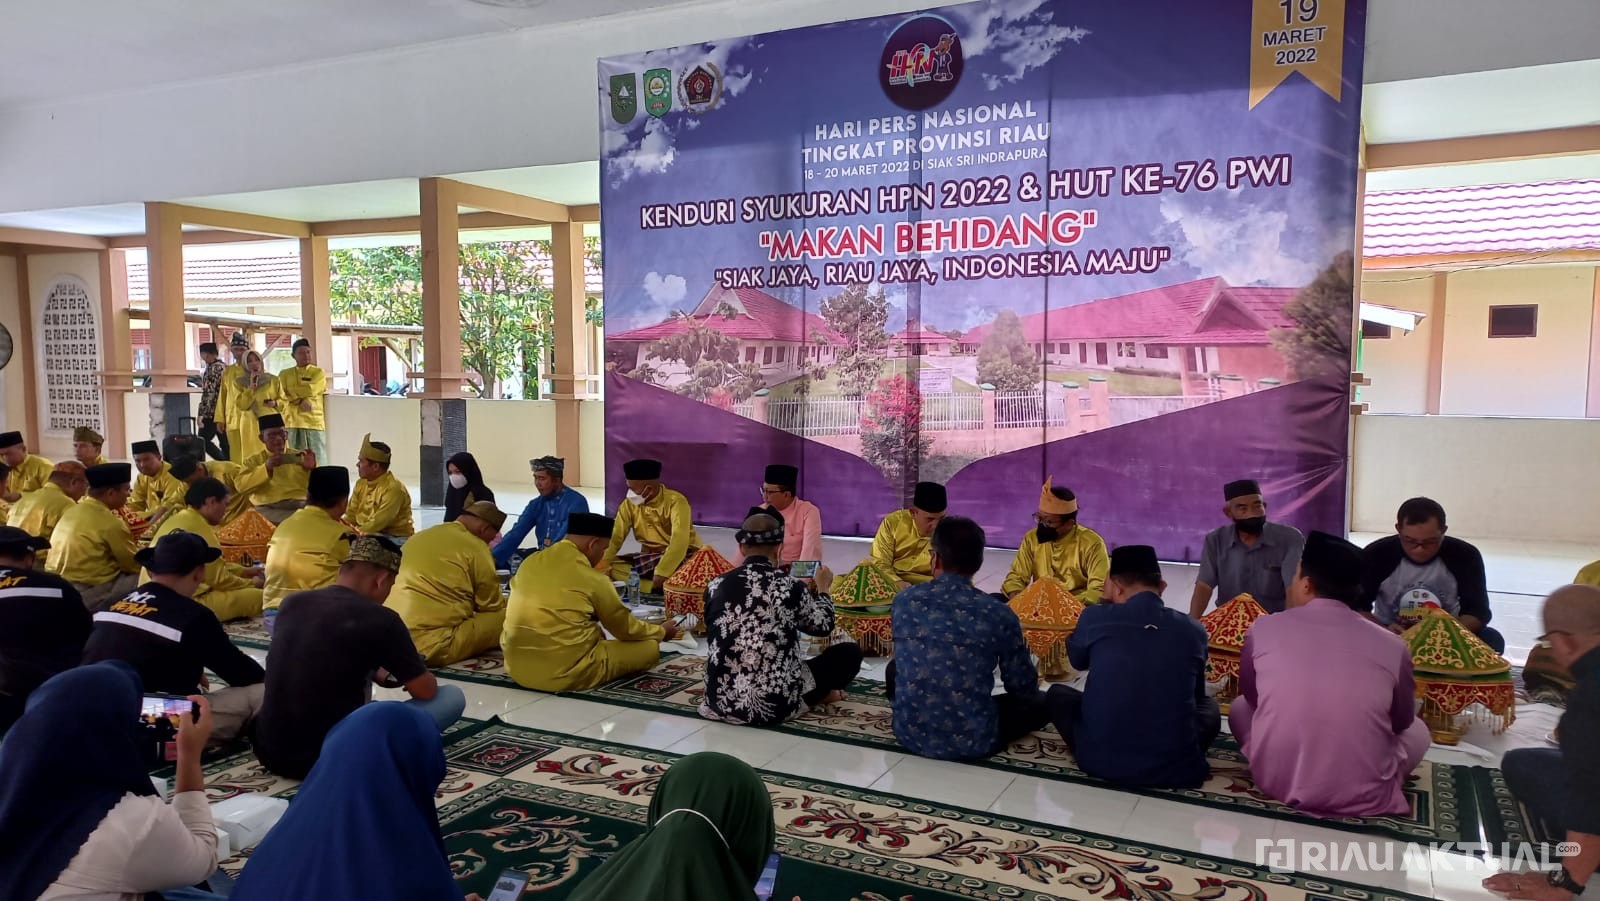 Dihadiri Sejumlah Pejabat, Makan Behidang PWI Riau Diselenggarakan Di Panti Asshidiqiyah